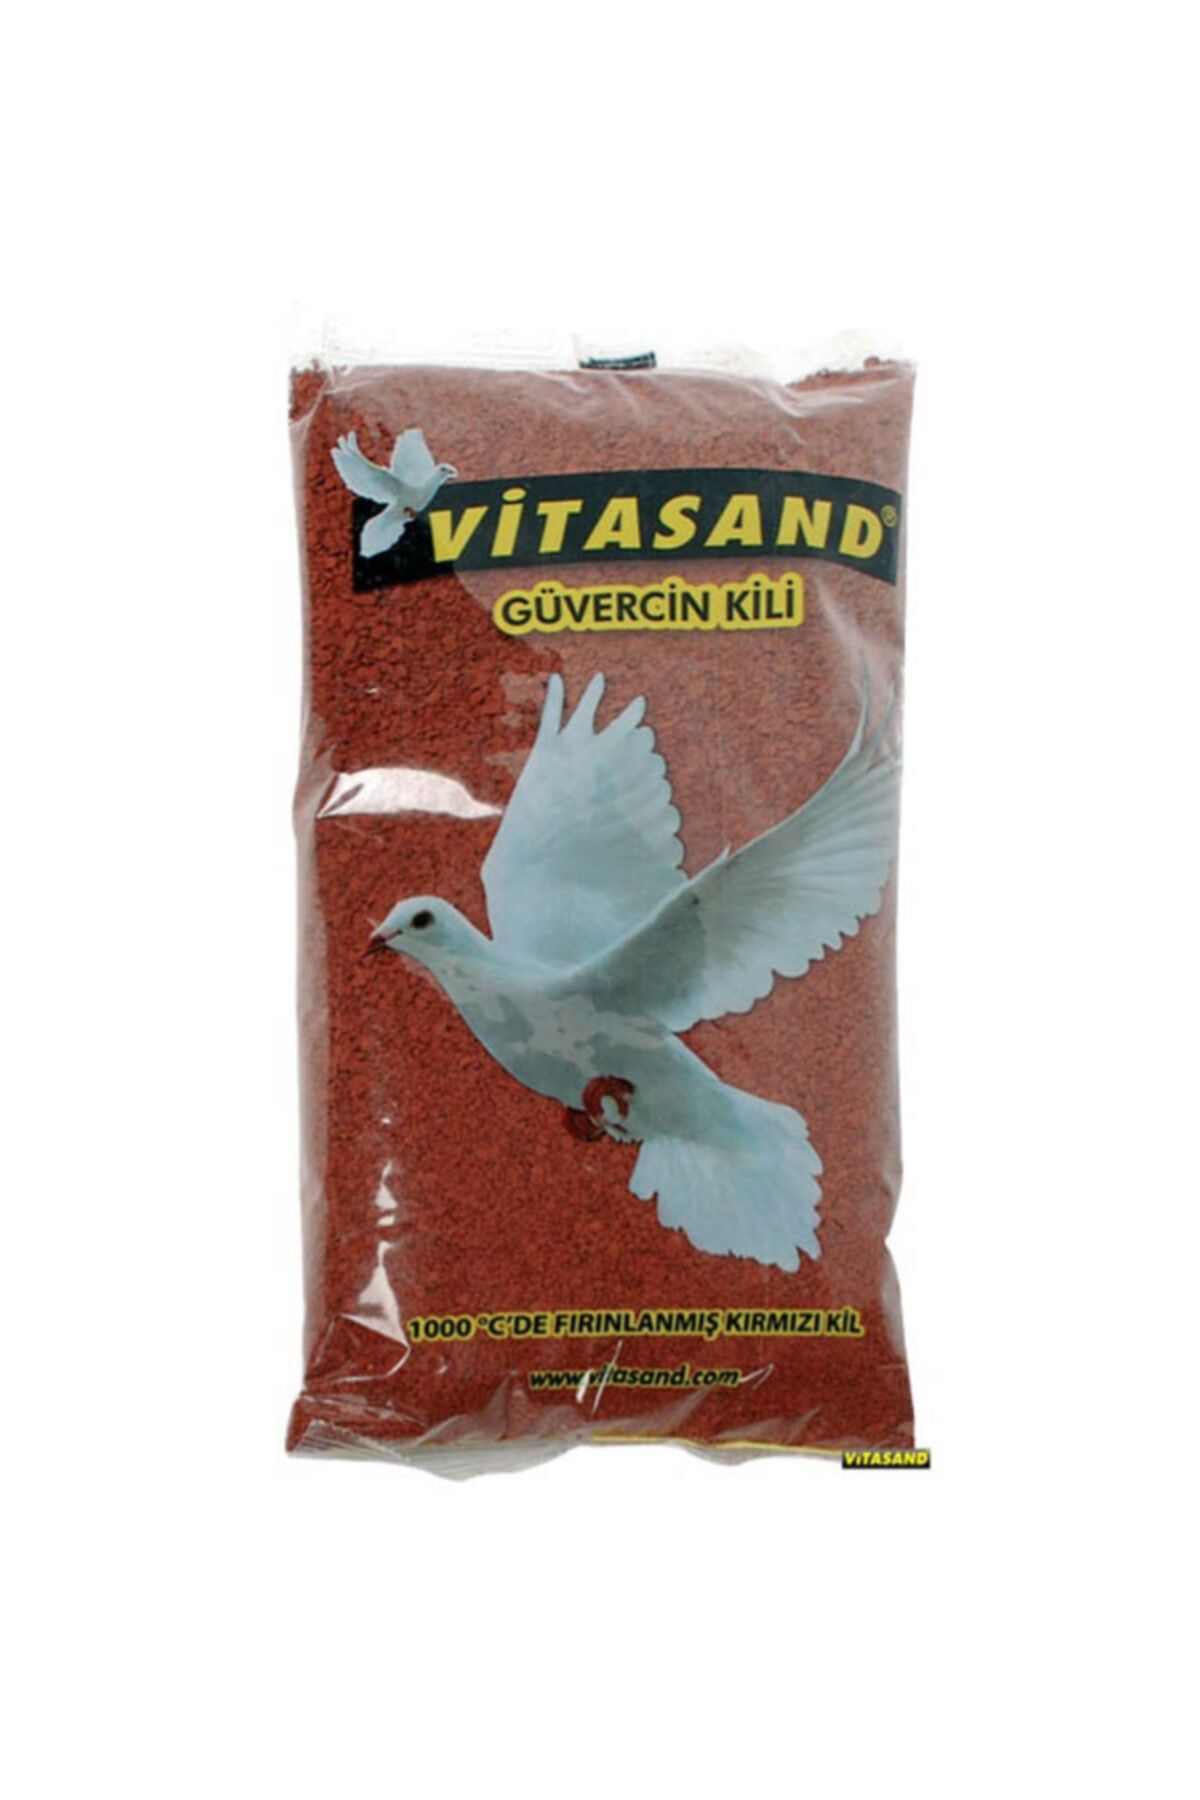 Vitasand Güvercin Kili Fırınlanmış Kırmızı Kil 1 kg